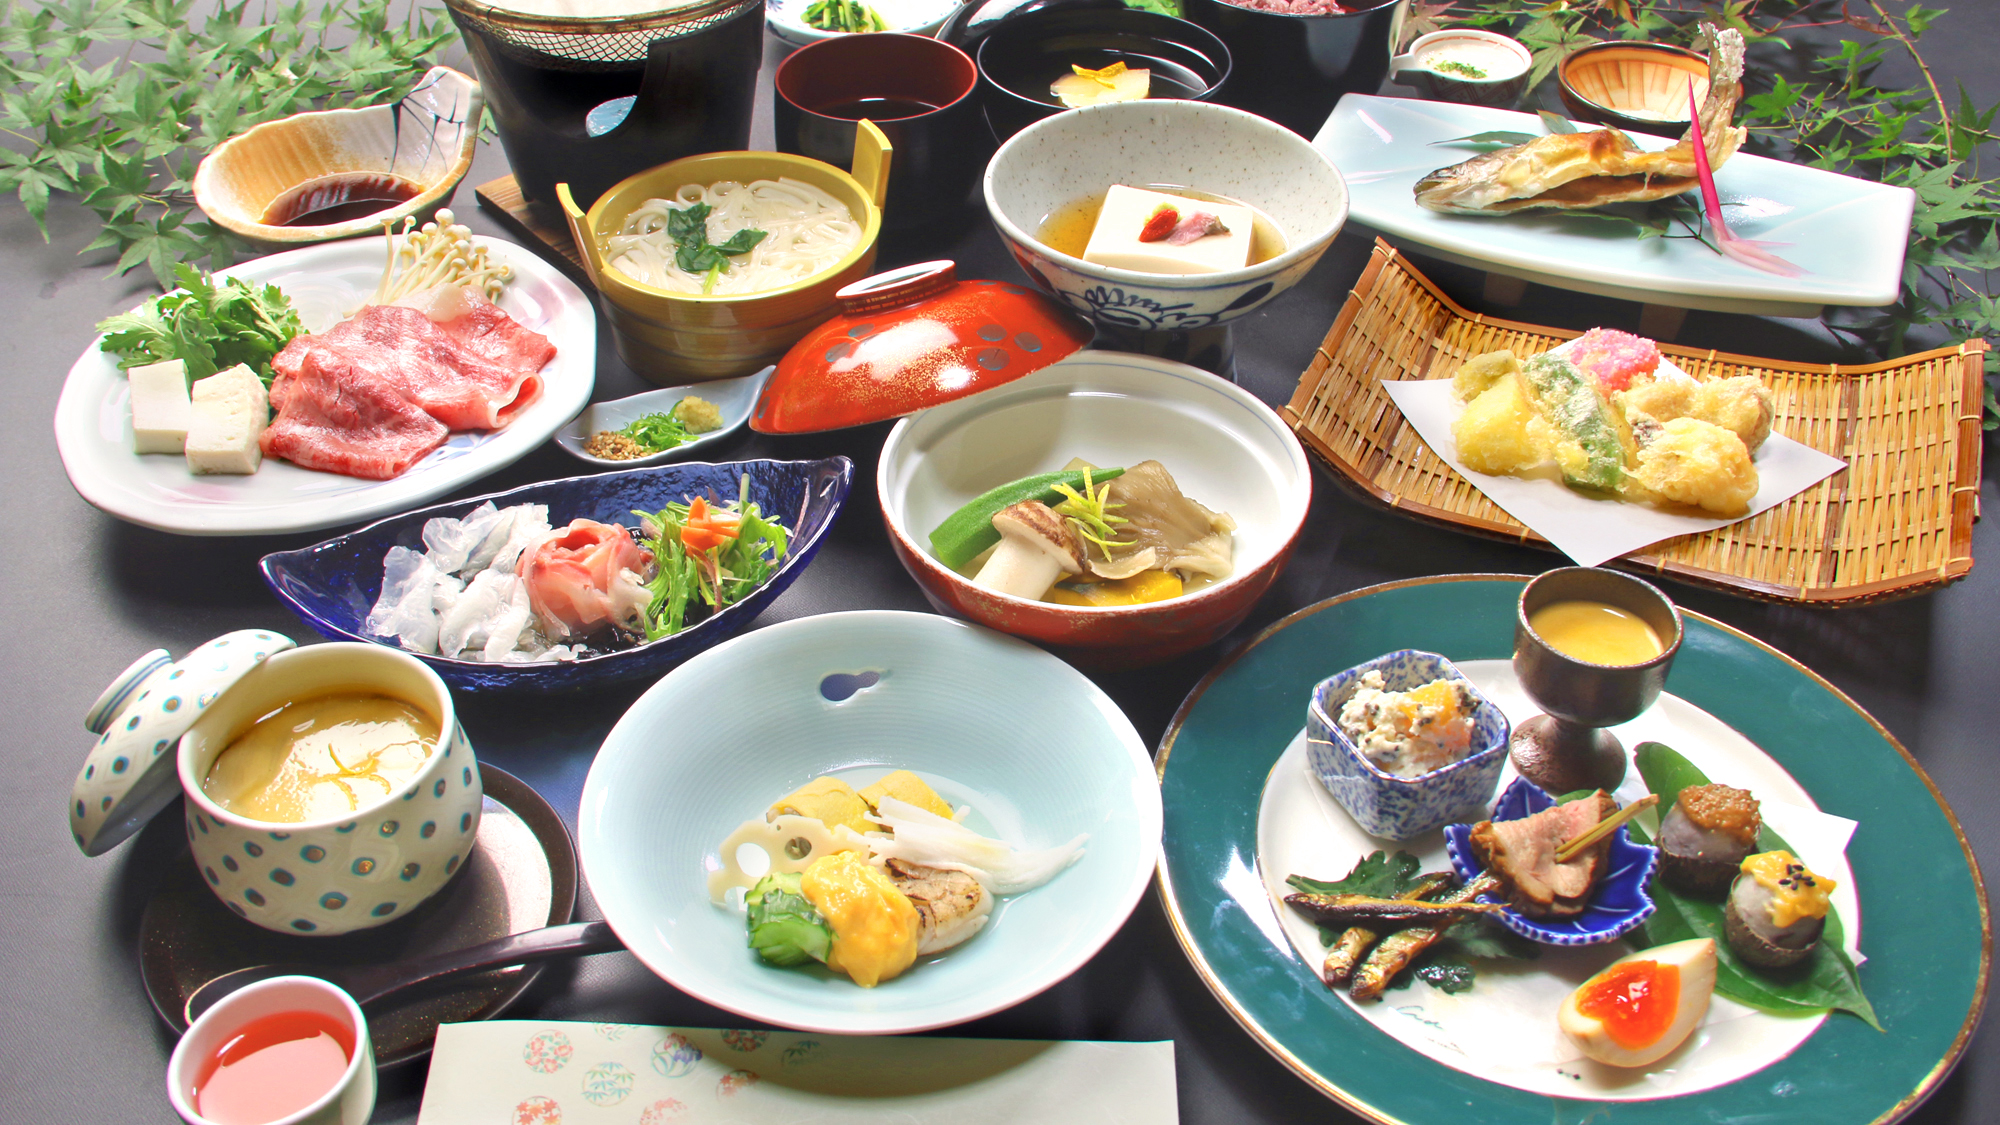 【吉野会席】四季折々の旬の食材を使い、一品一品丁寧に仕上げられたお料理。